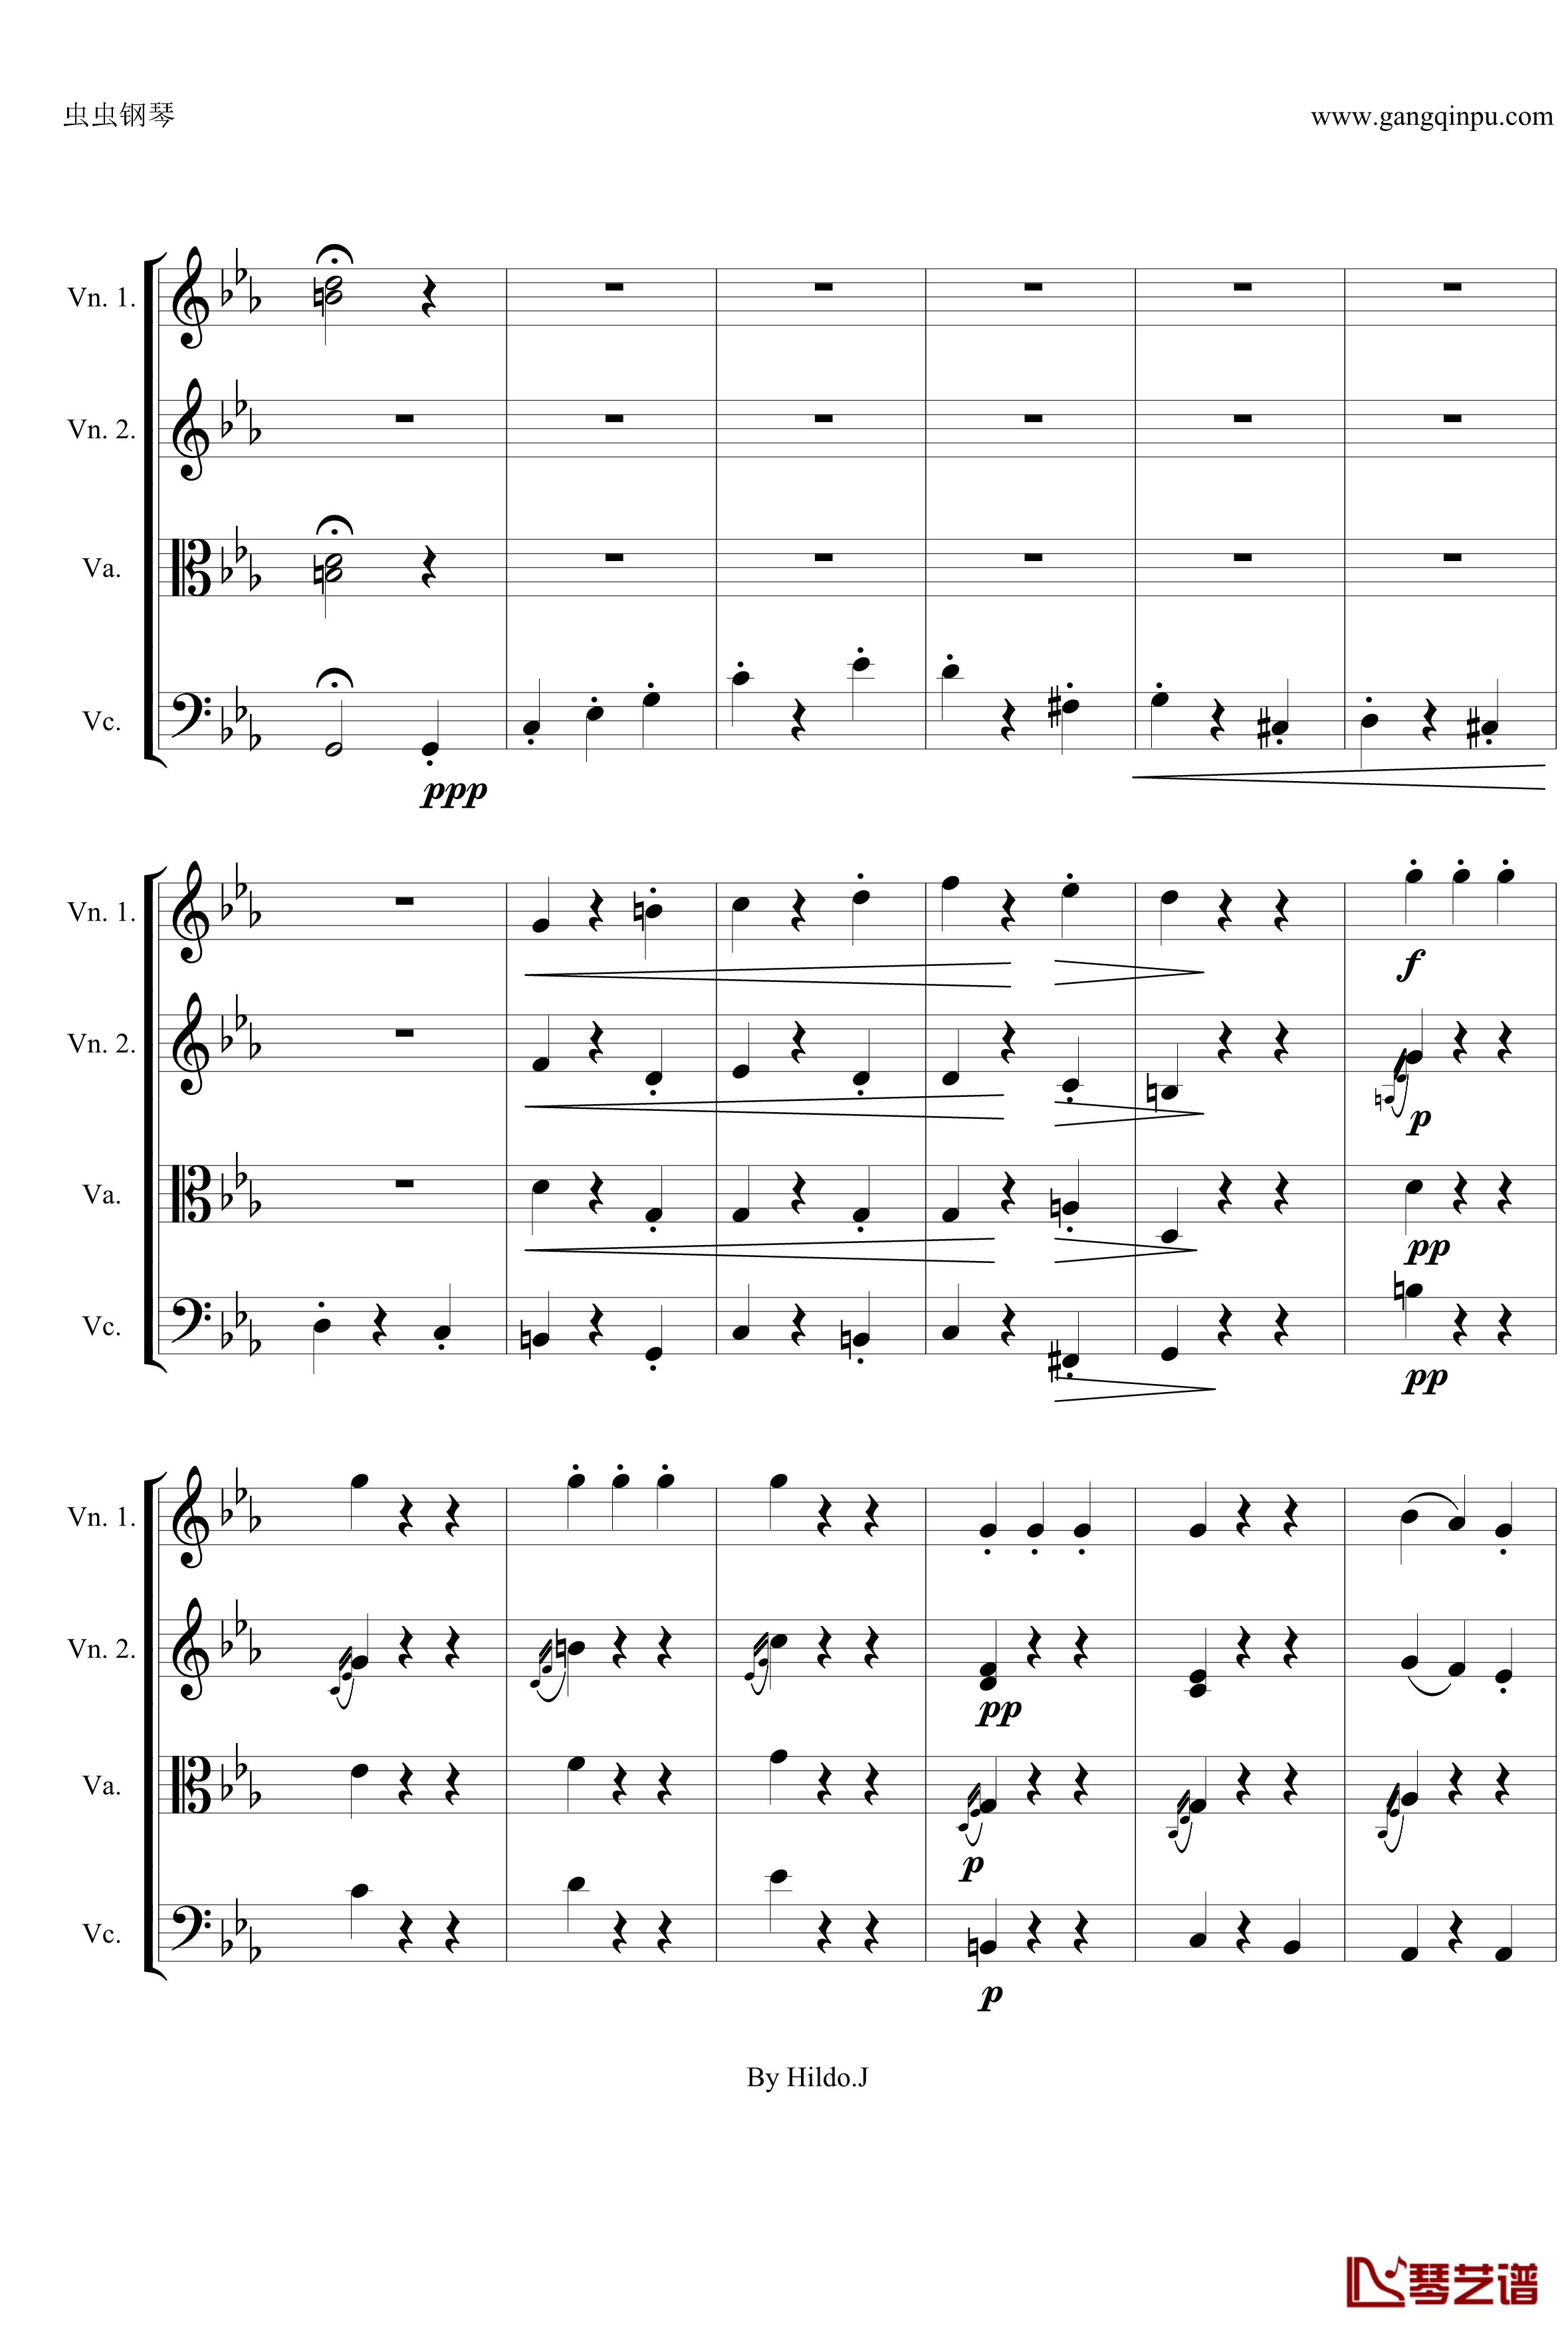 命运交响曲第三乐章钢琴谱-弦乐版-贝多芬-beethoven17